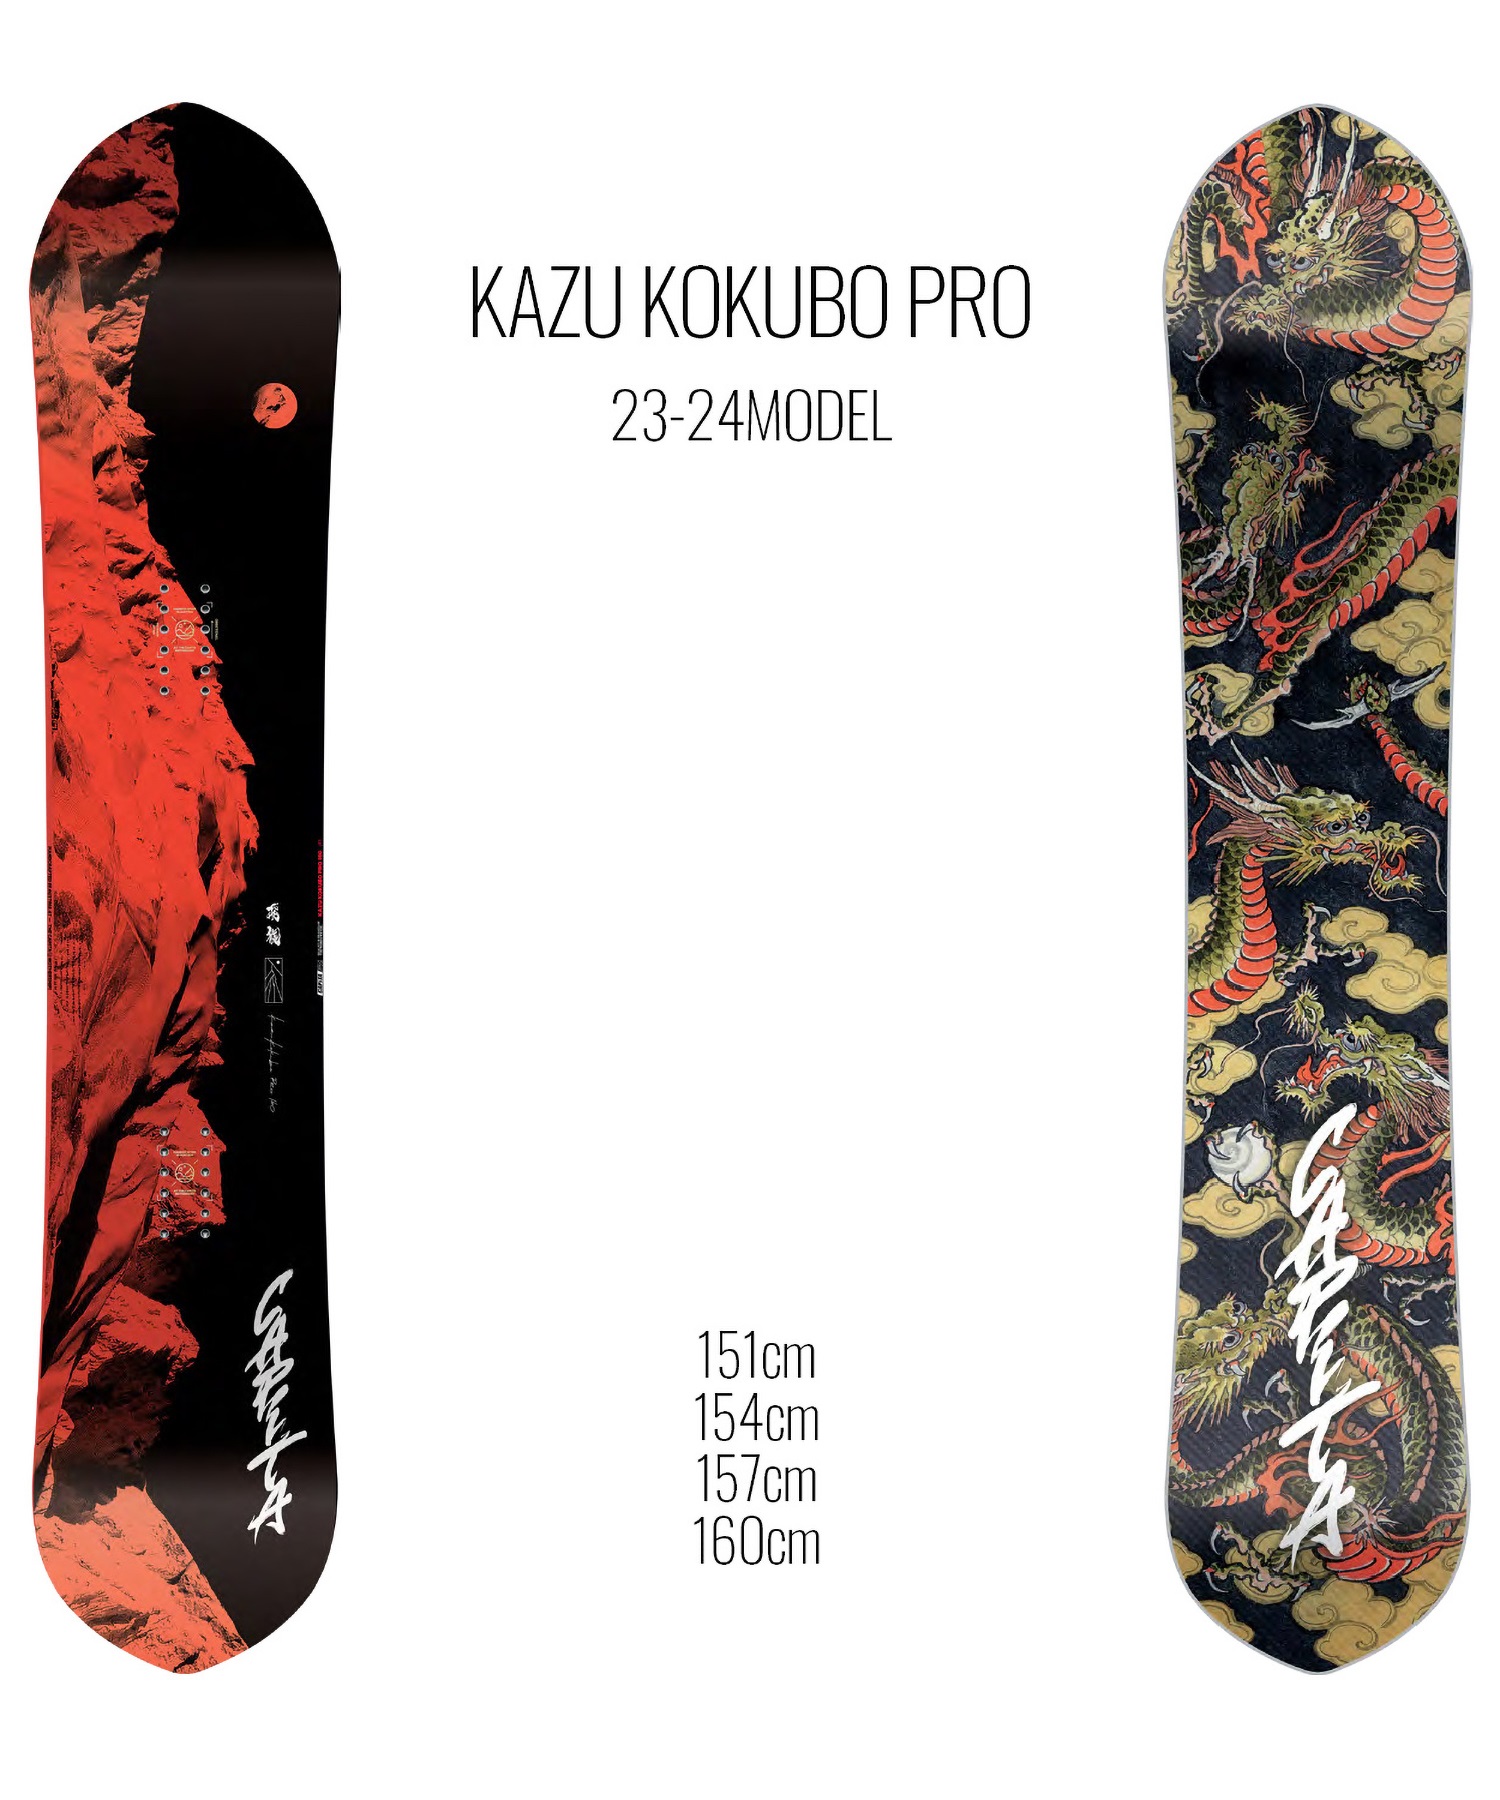 23-24 CAPITA KAZU KOKUBO PRO 154cm 新品キャピタのカズコクボです